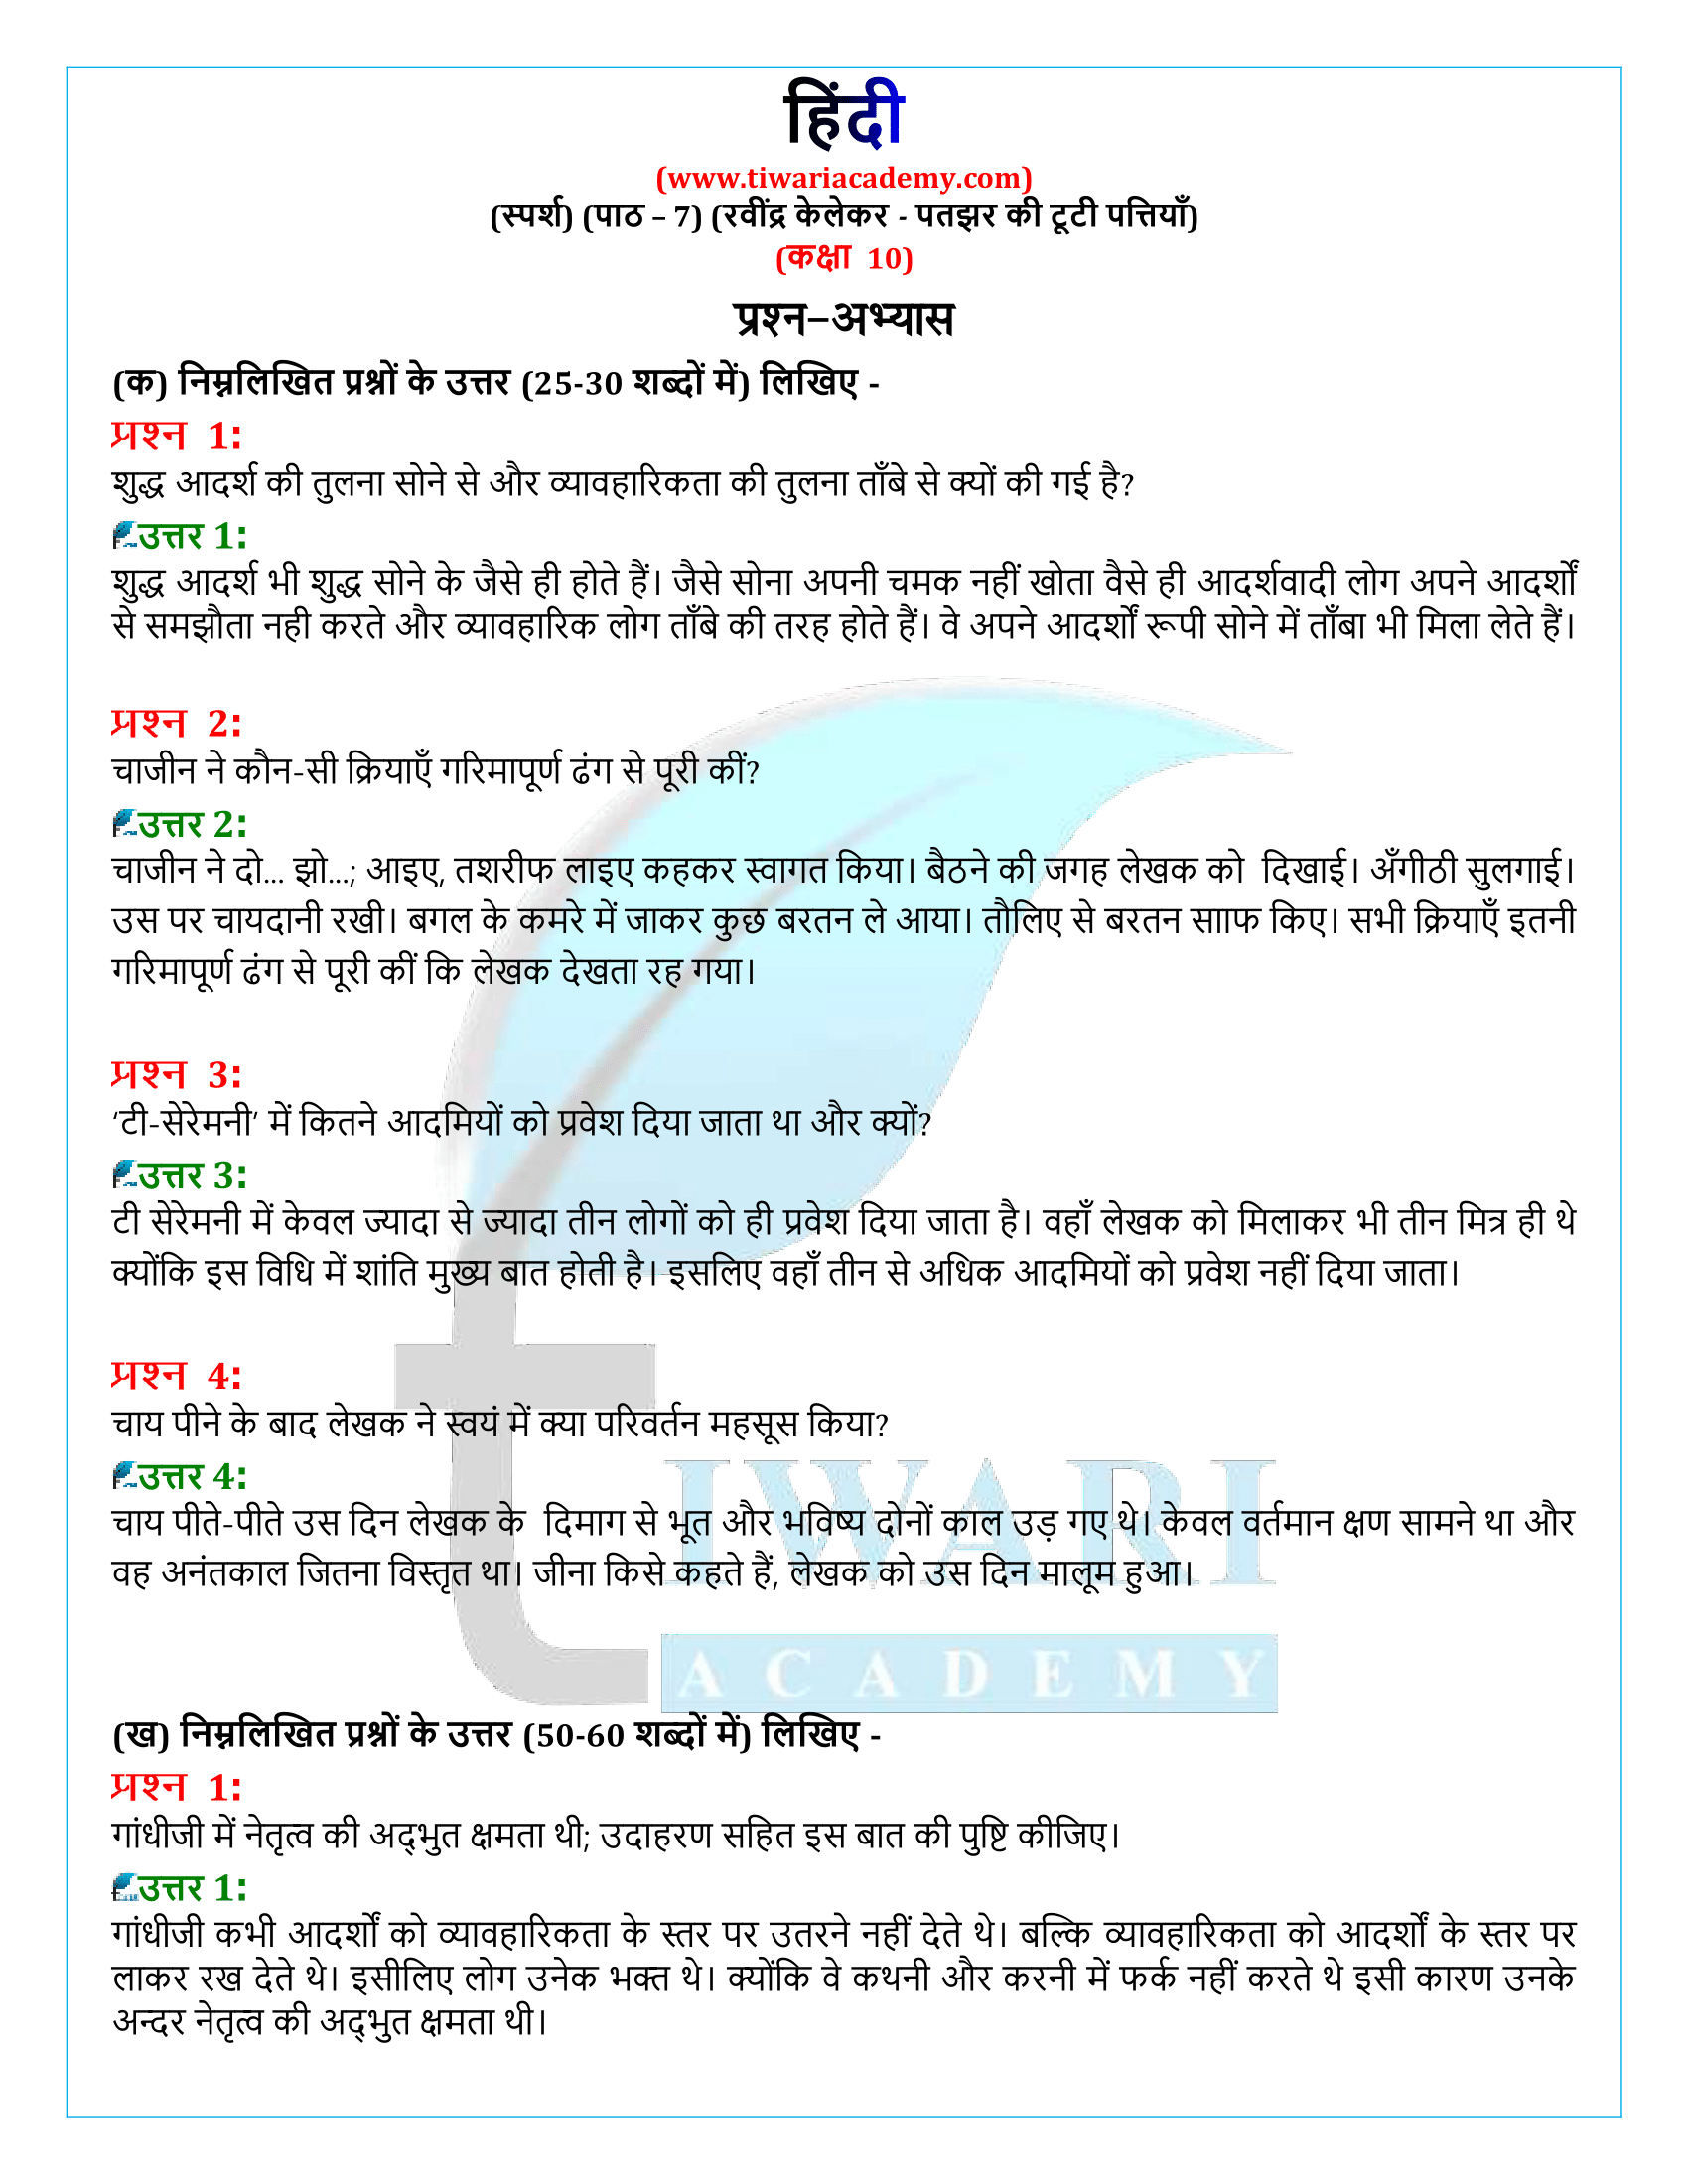 कक्षा 10 हिंदी स्पर्श गद्य अध्याय 7 के प्रश्न उत्तर